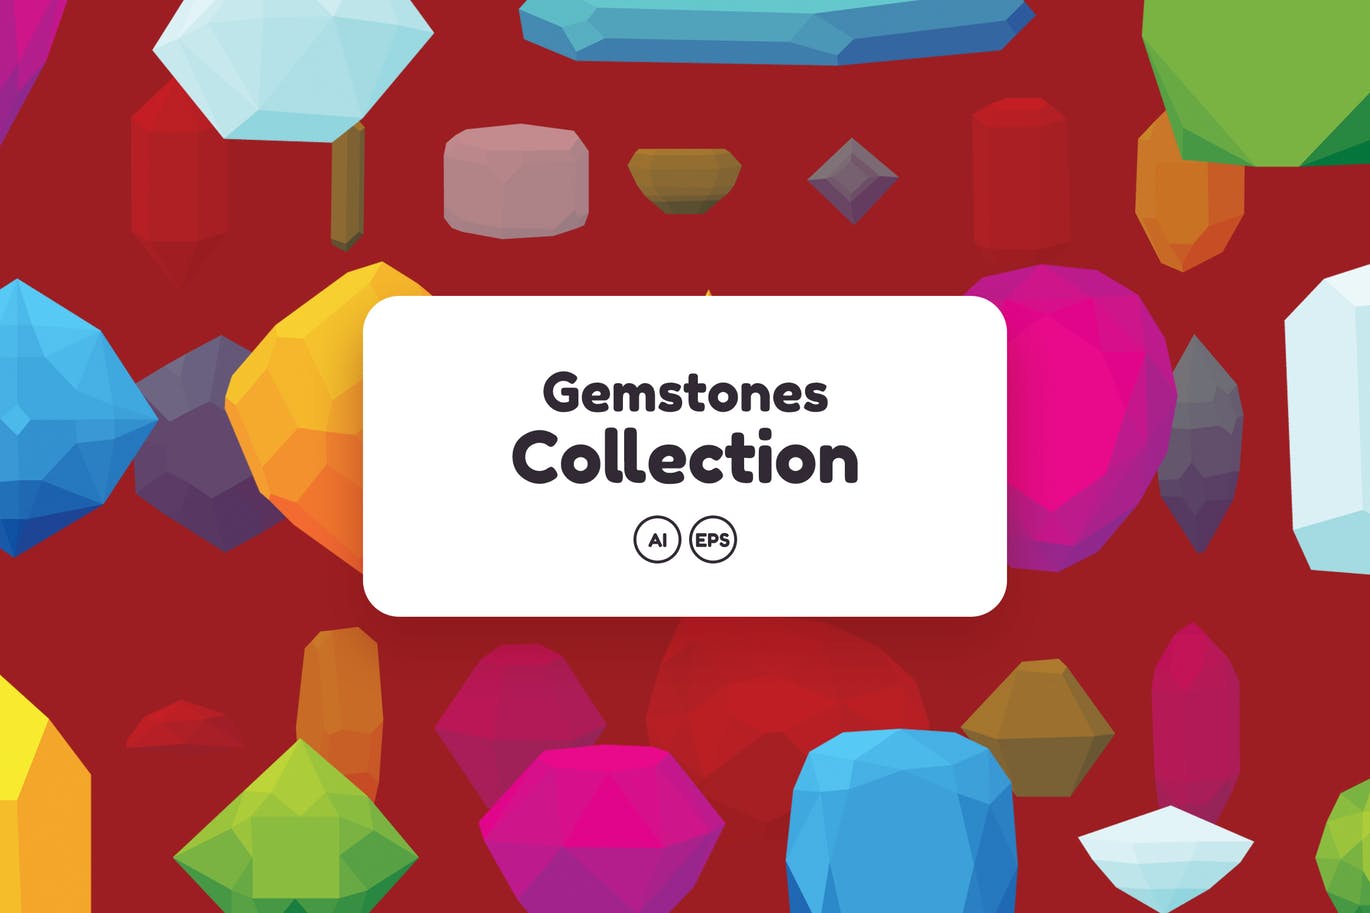 50+彩色宝石钻石图案矢量背景素材 Gemstones Collection插图